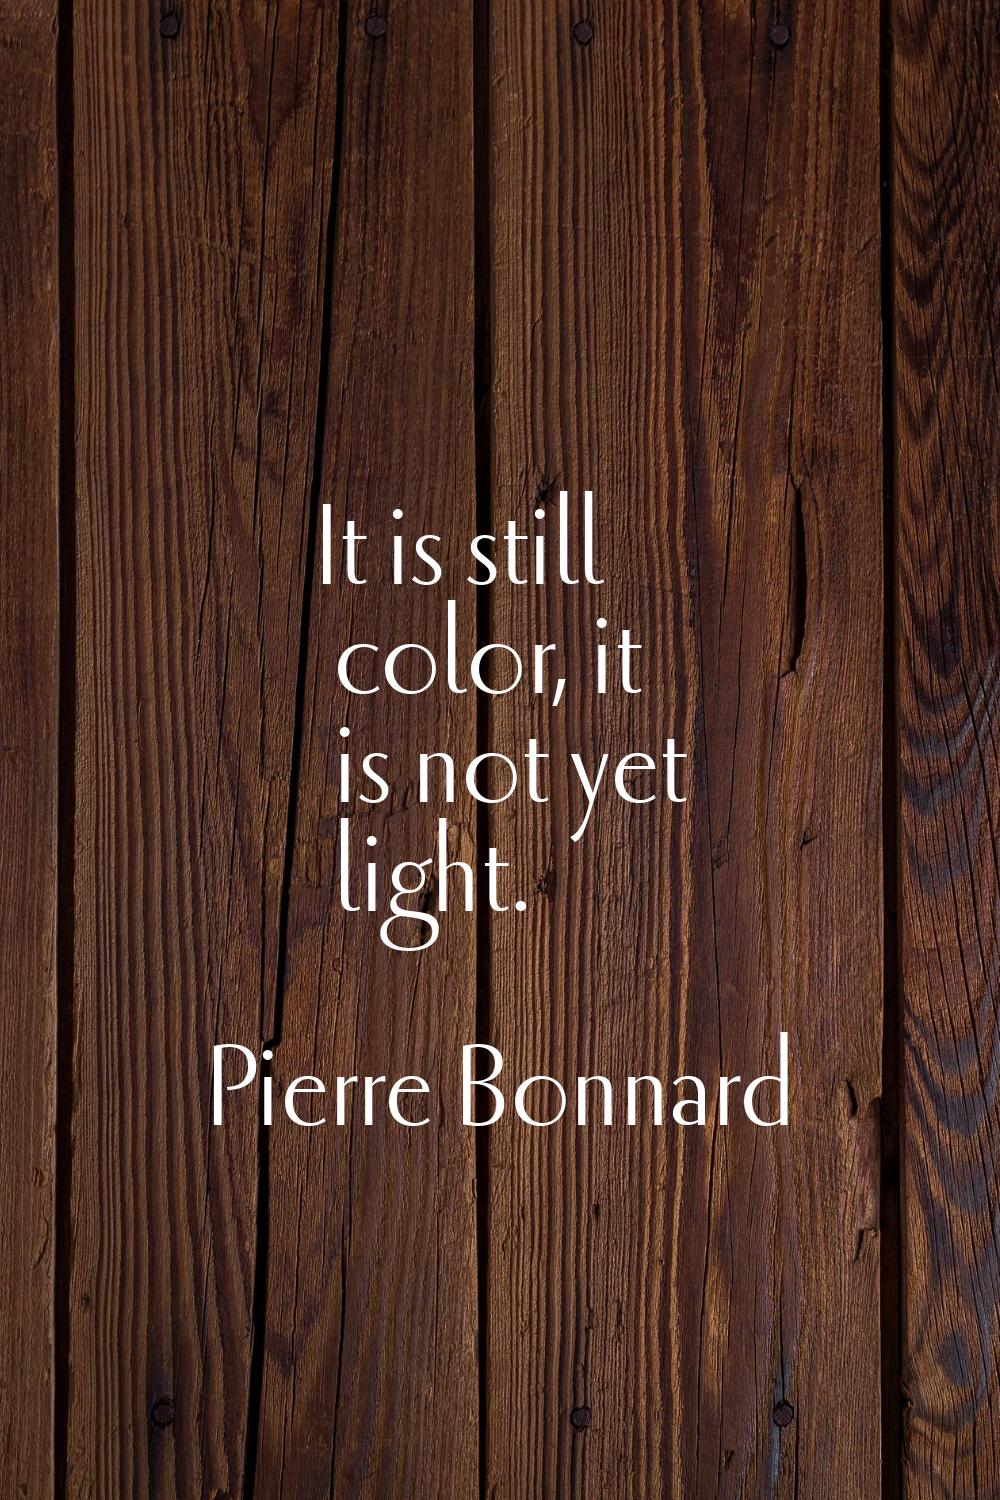 It is still color, it is not yet light.